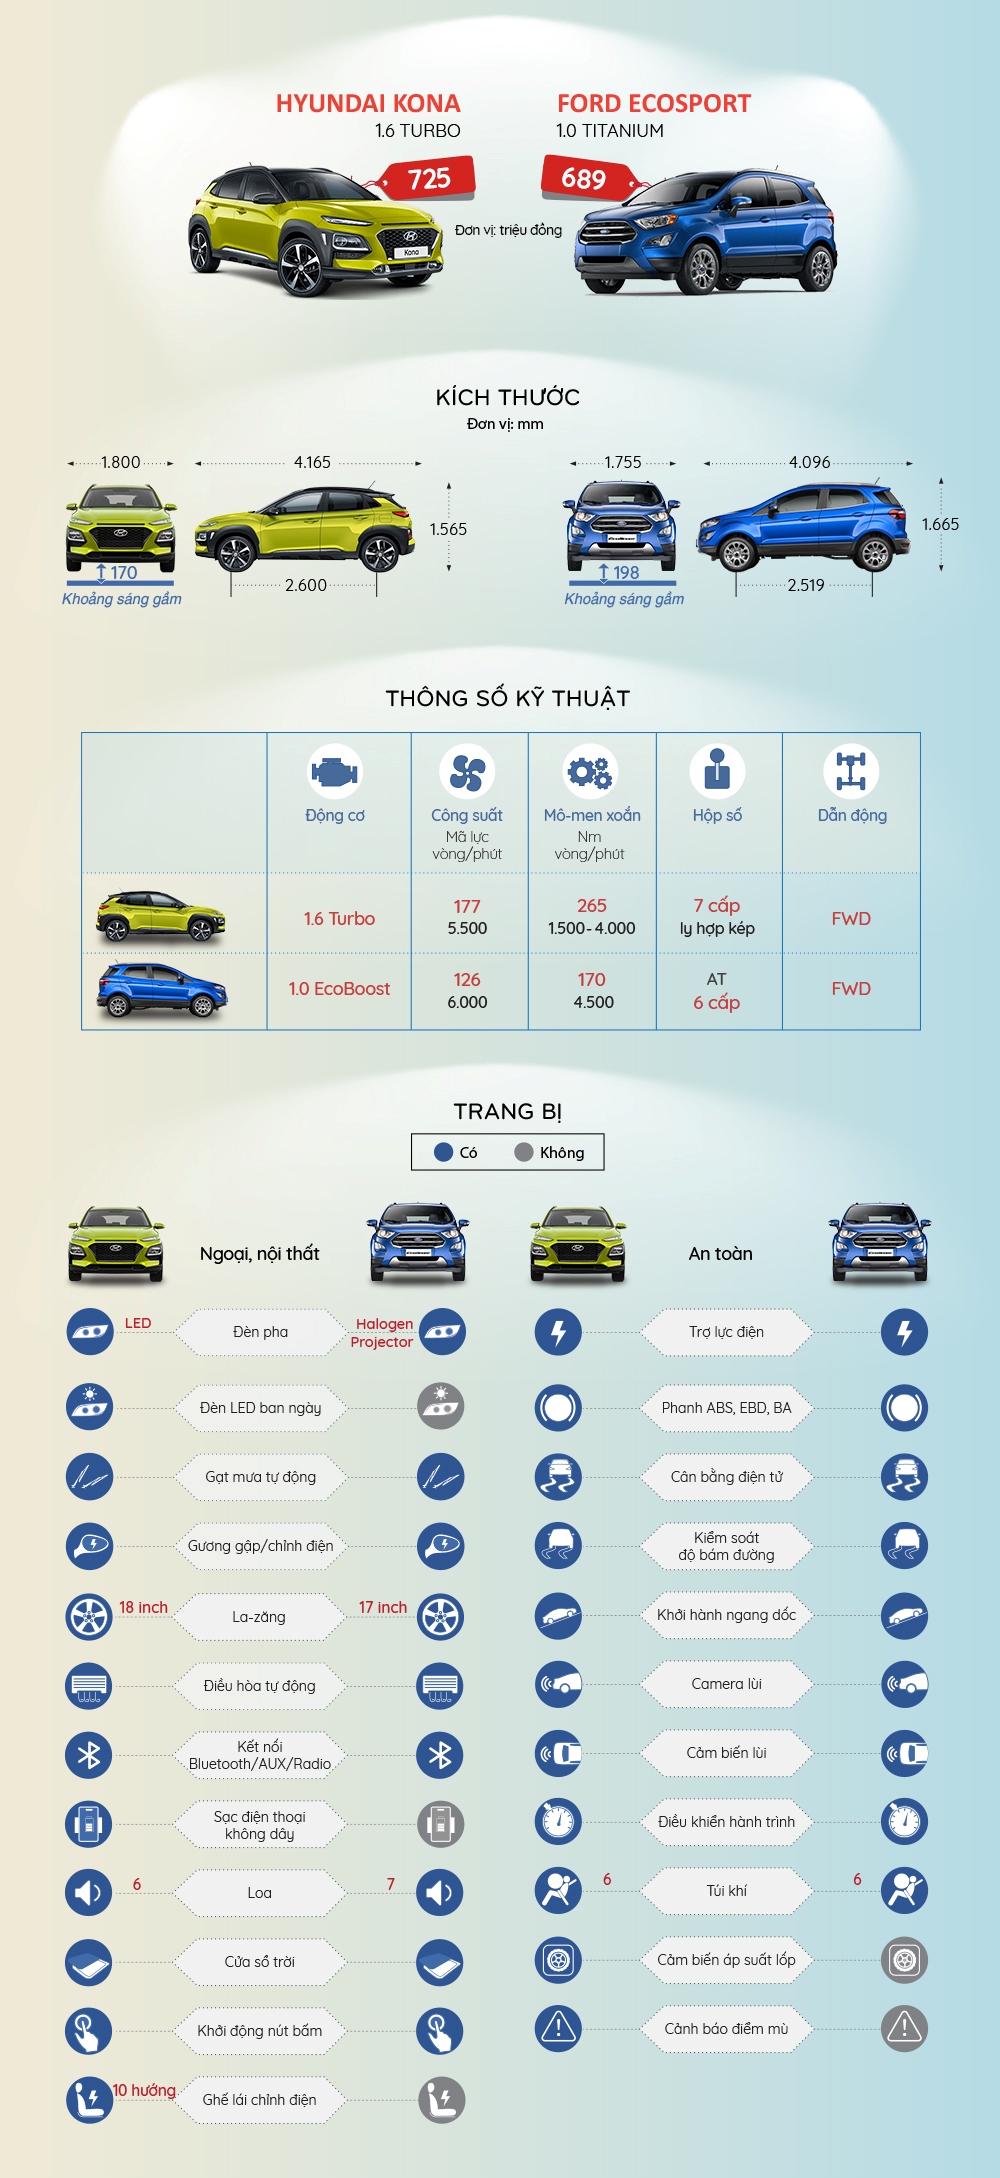 SUV đô thị: Chọn Hyundai Kona hay Ford Ecosport